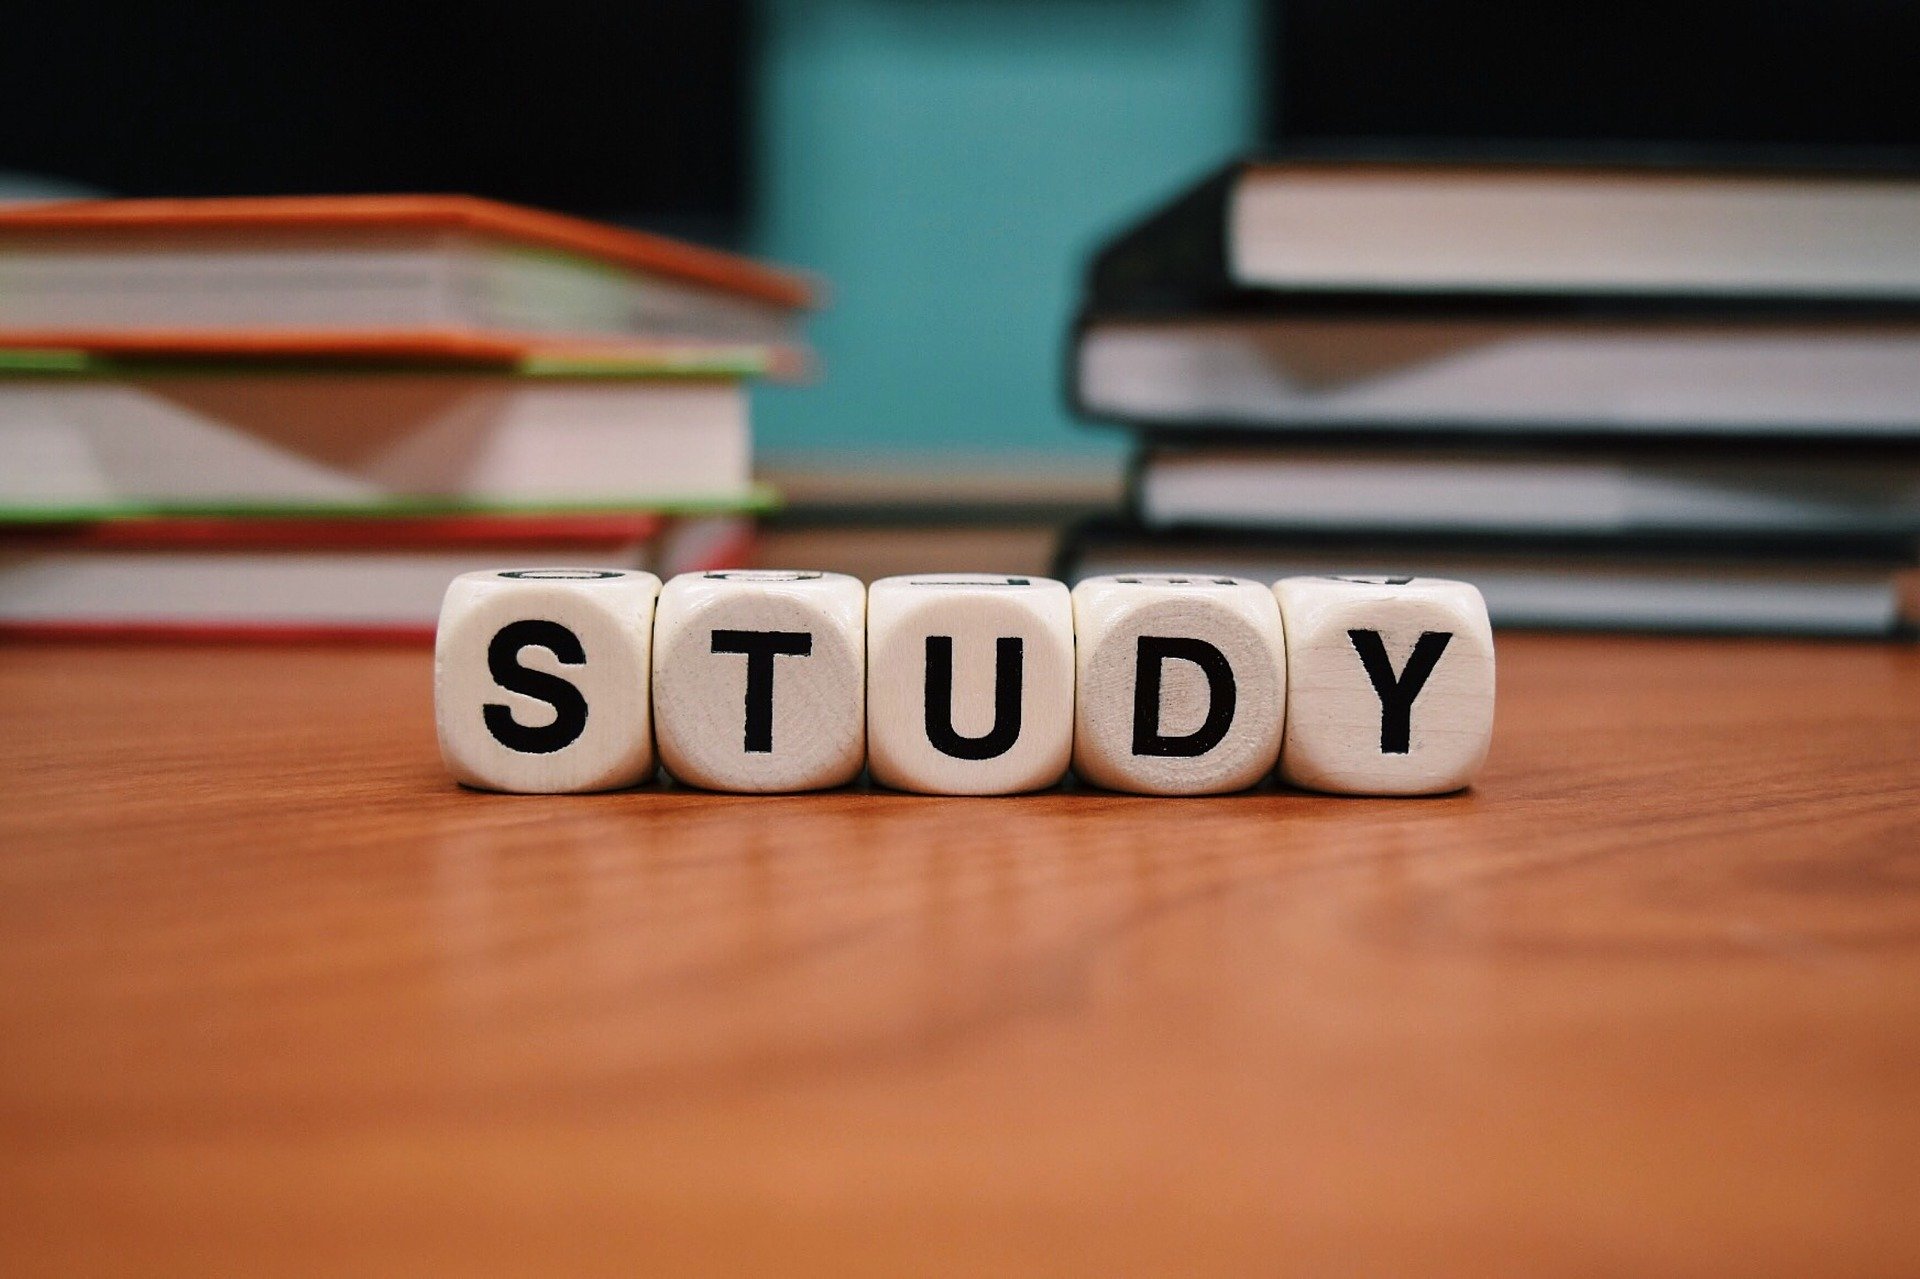 Hintergrundbild Studienorganisation mit dem Wort "STUDY" auf Würfeln geschrieben